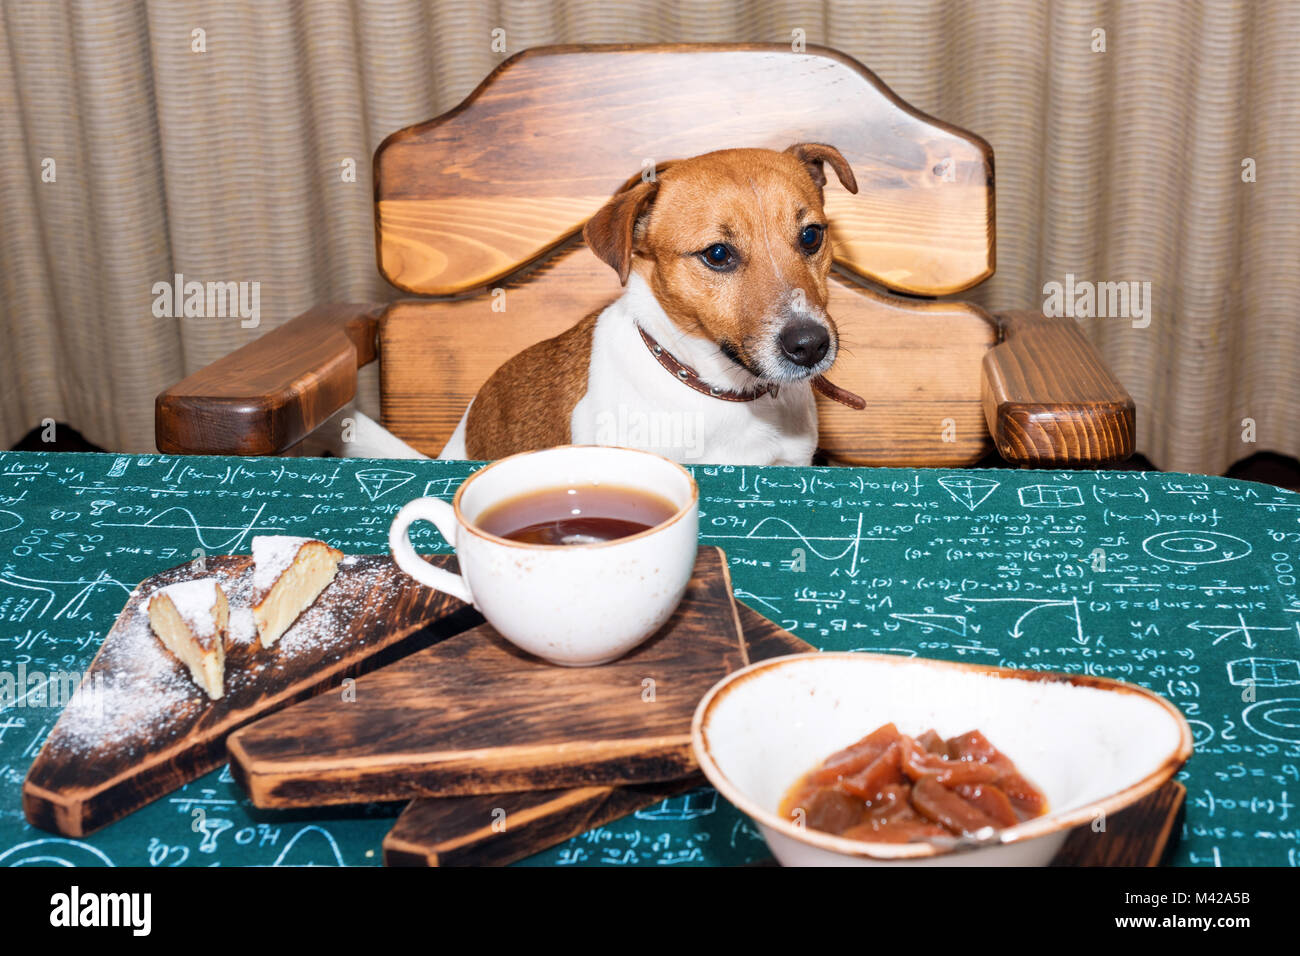 Lustig Hungrig Jack Russell Hund In Der Kuche Essen Und Trinken